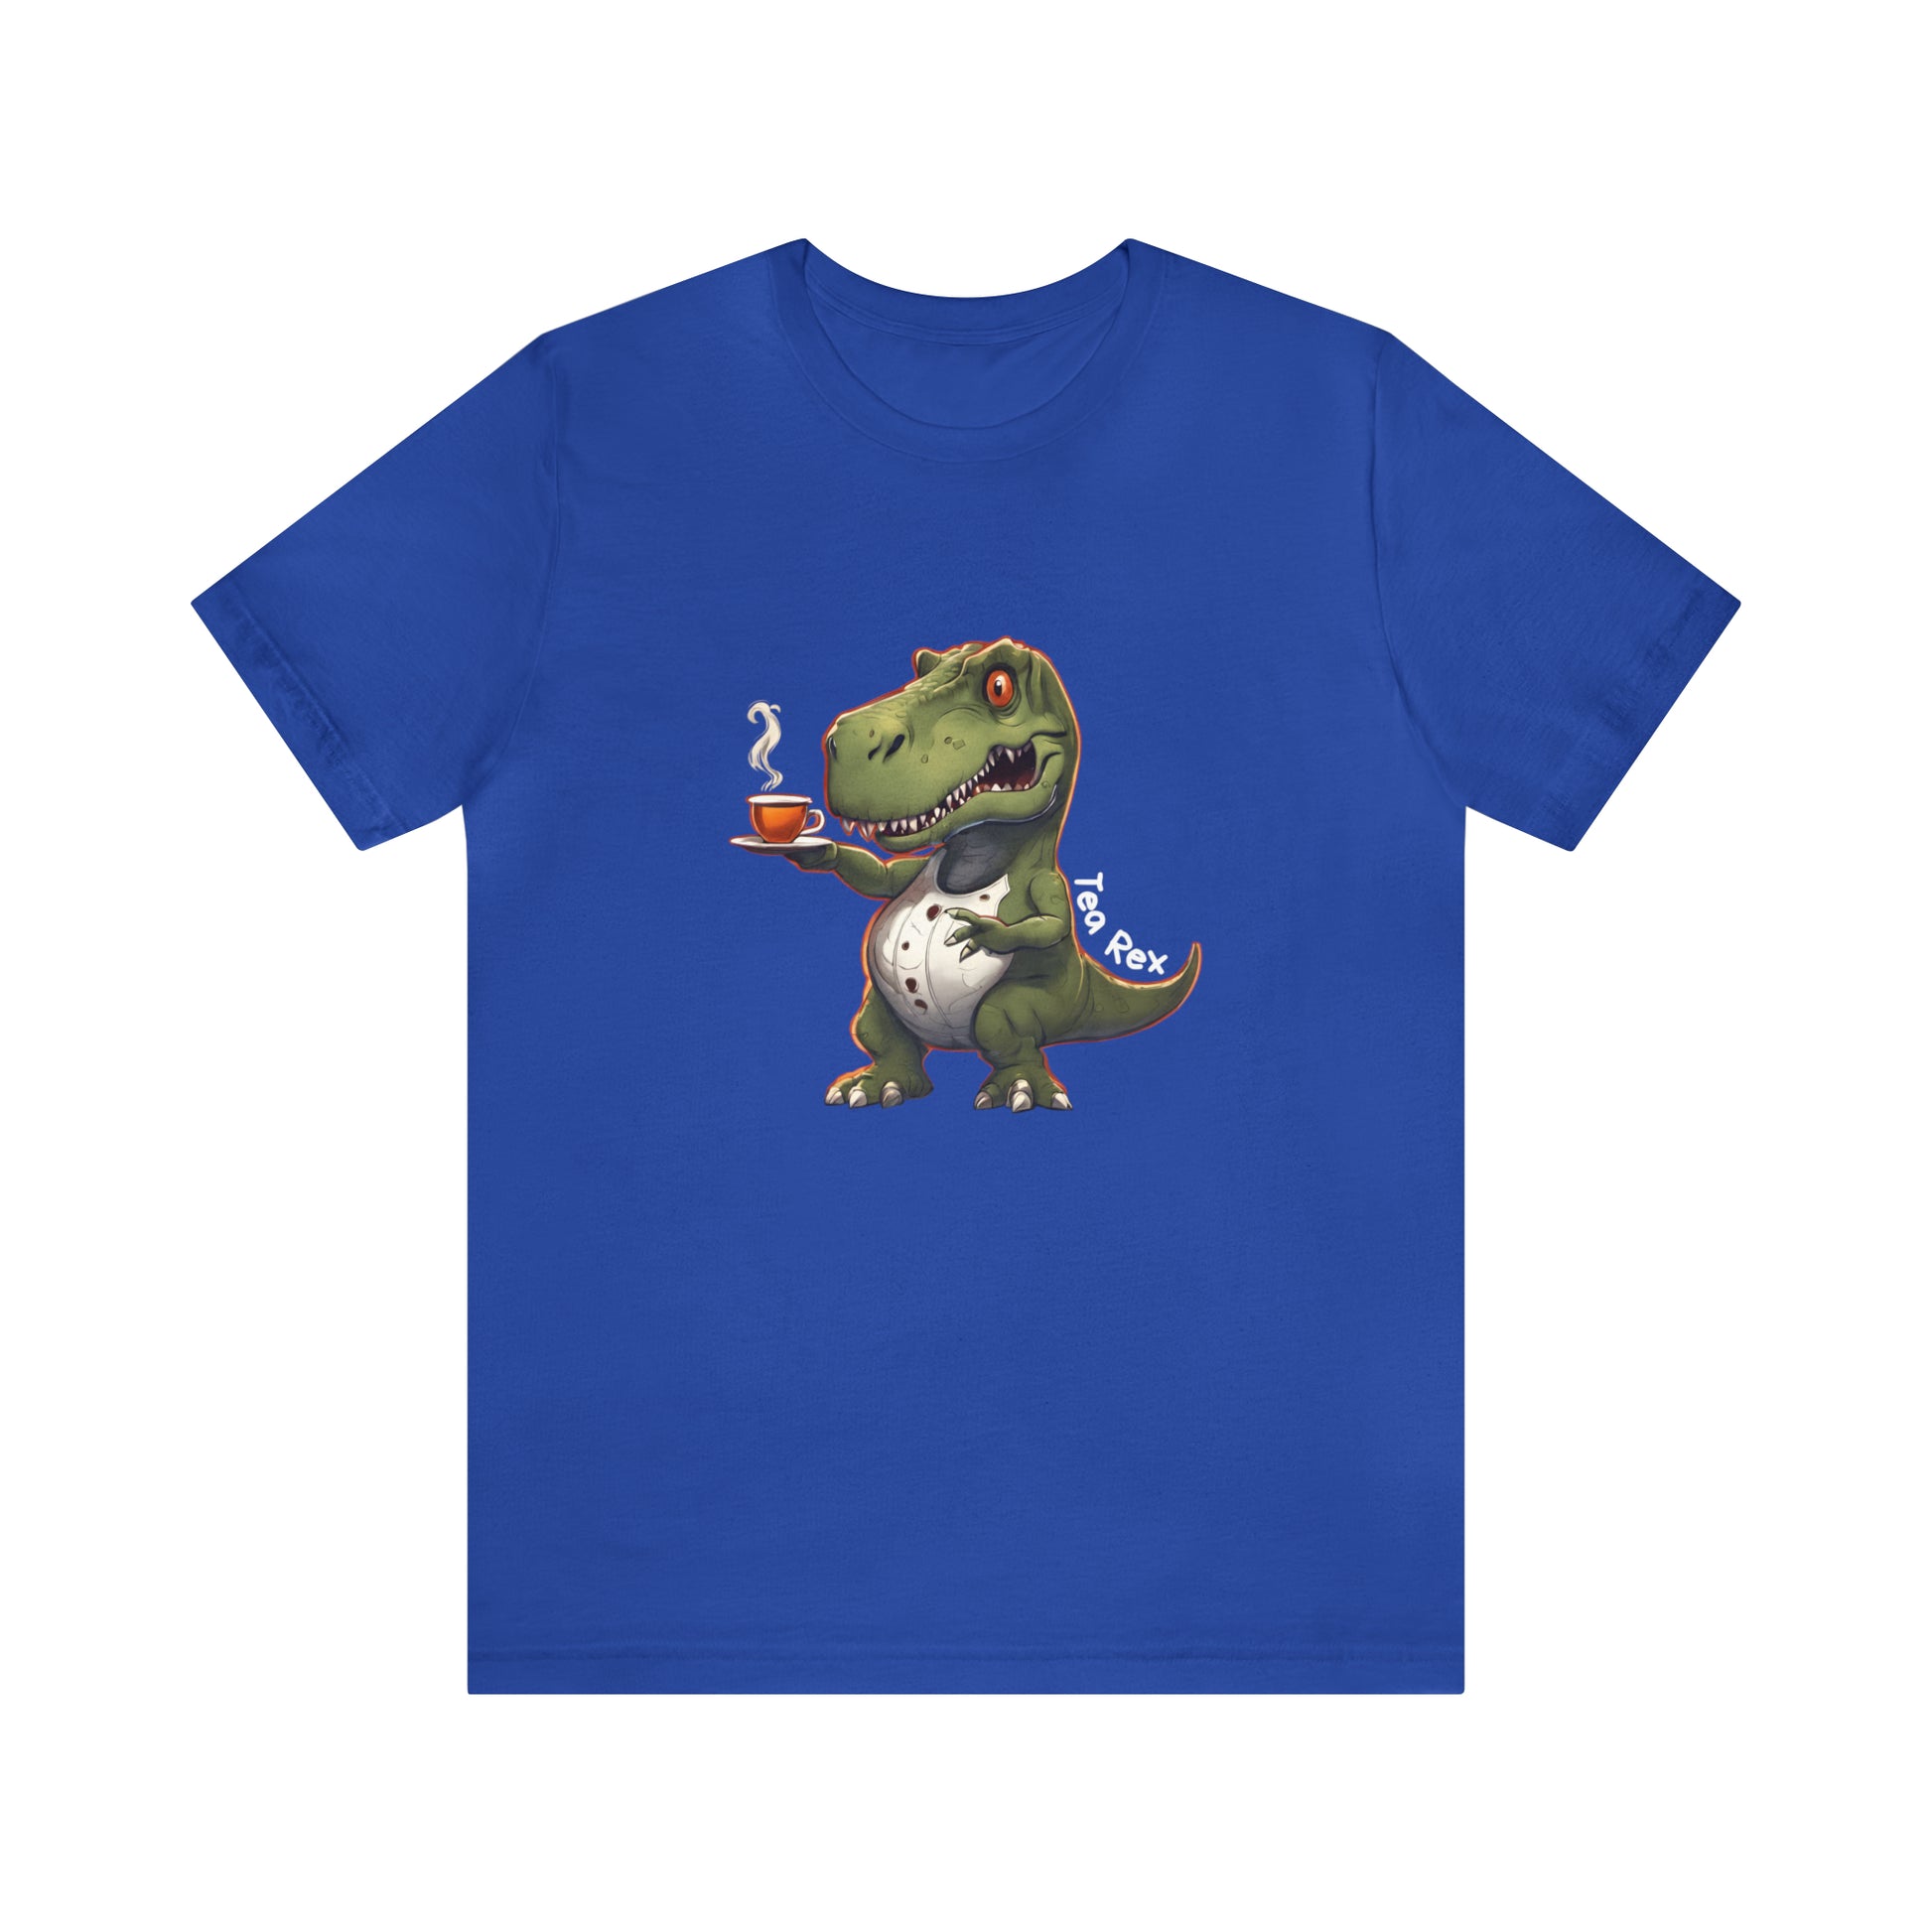 Tea Rex & T-rex dinosaur Unisex short sleeve T-Shirt with Ultra soft-cotton light blue